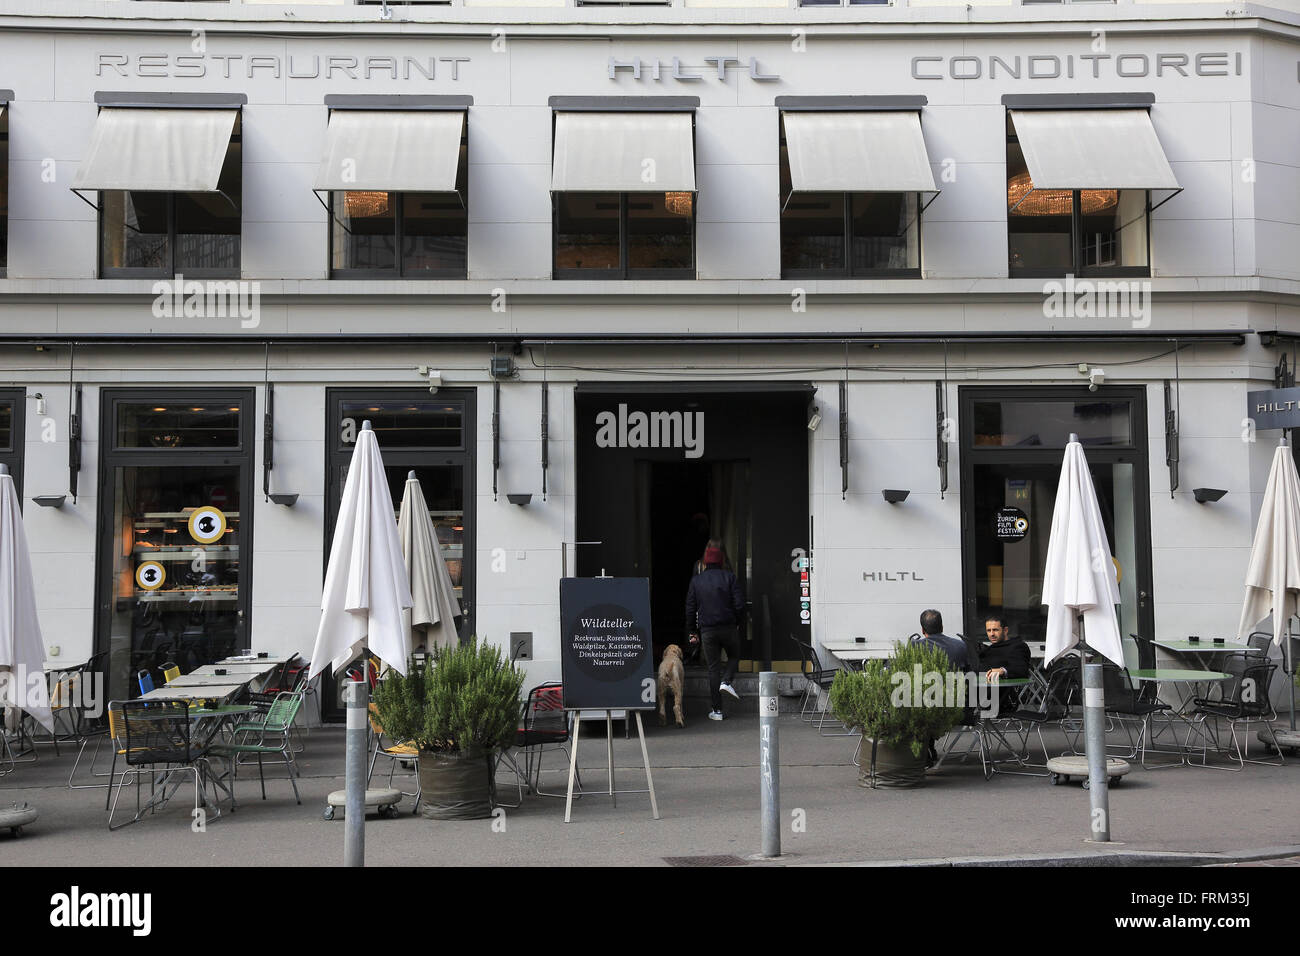 La vista de Hiltl restaurante más antiguo del mundo abren continuamente restaurante vegetariano en Zurich, Suiza Foto de stock